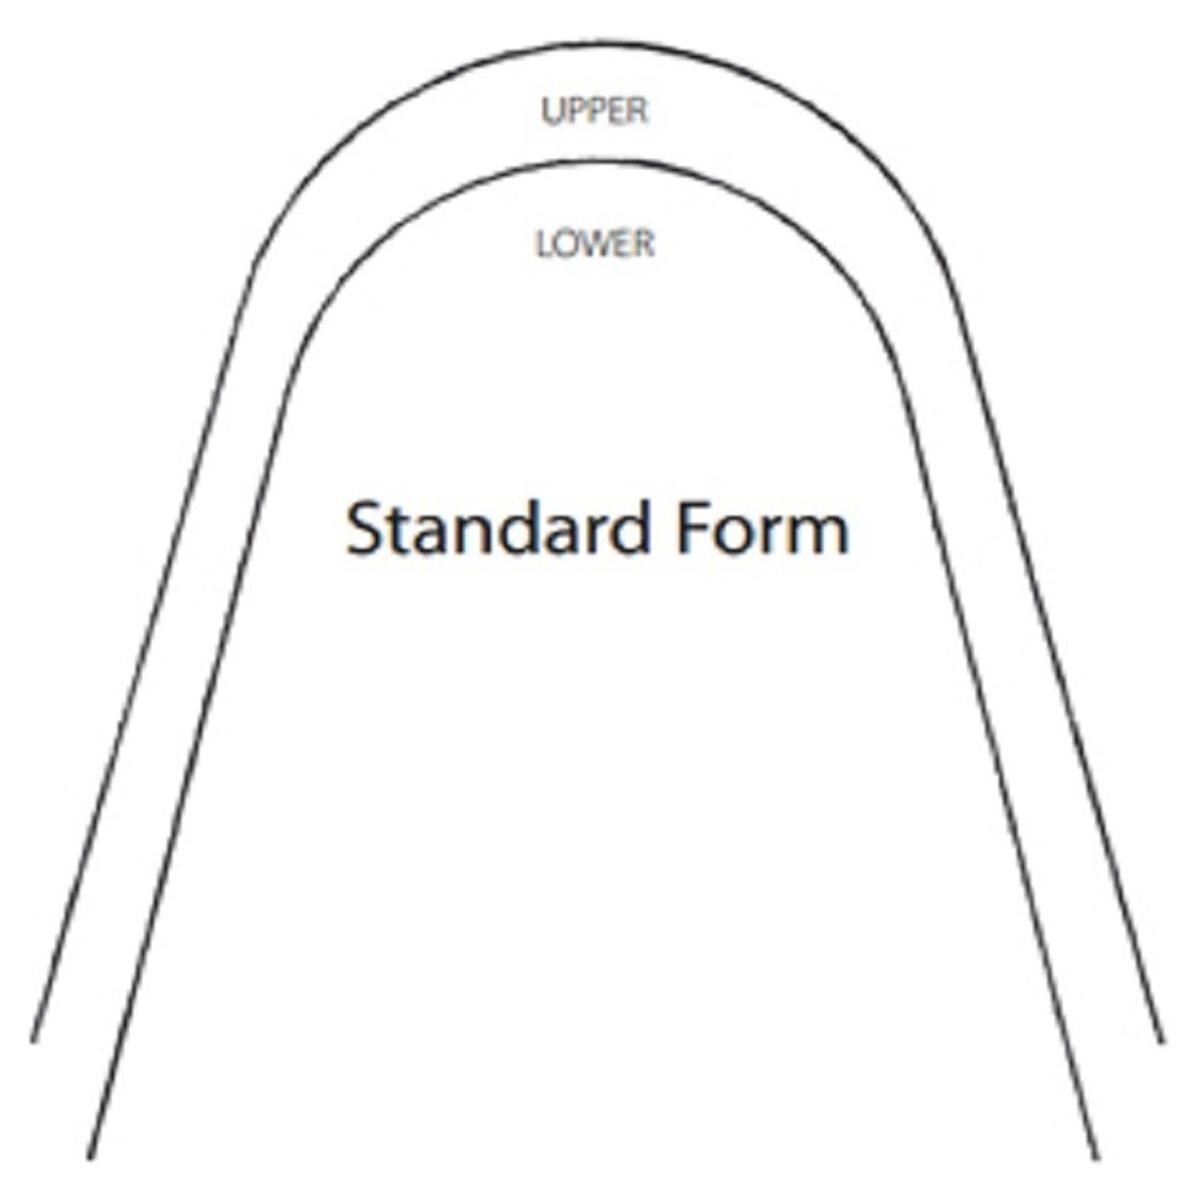 Fil en acier inoxydable forme standard, rectangulaire - Infrieur, .016 x .022 - 25 pcs